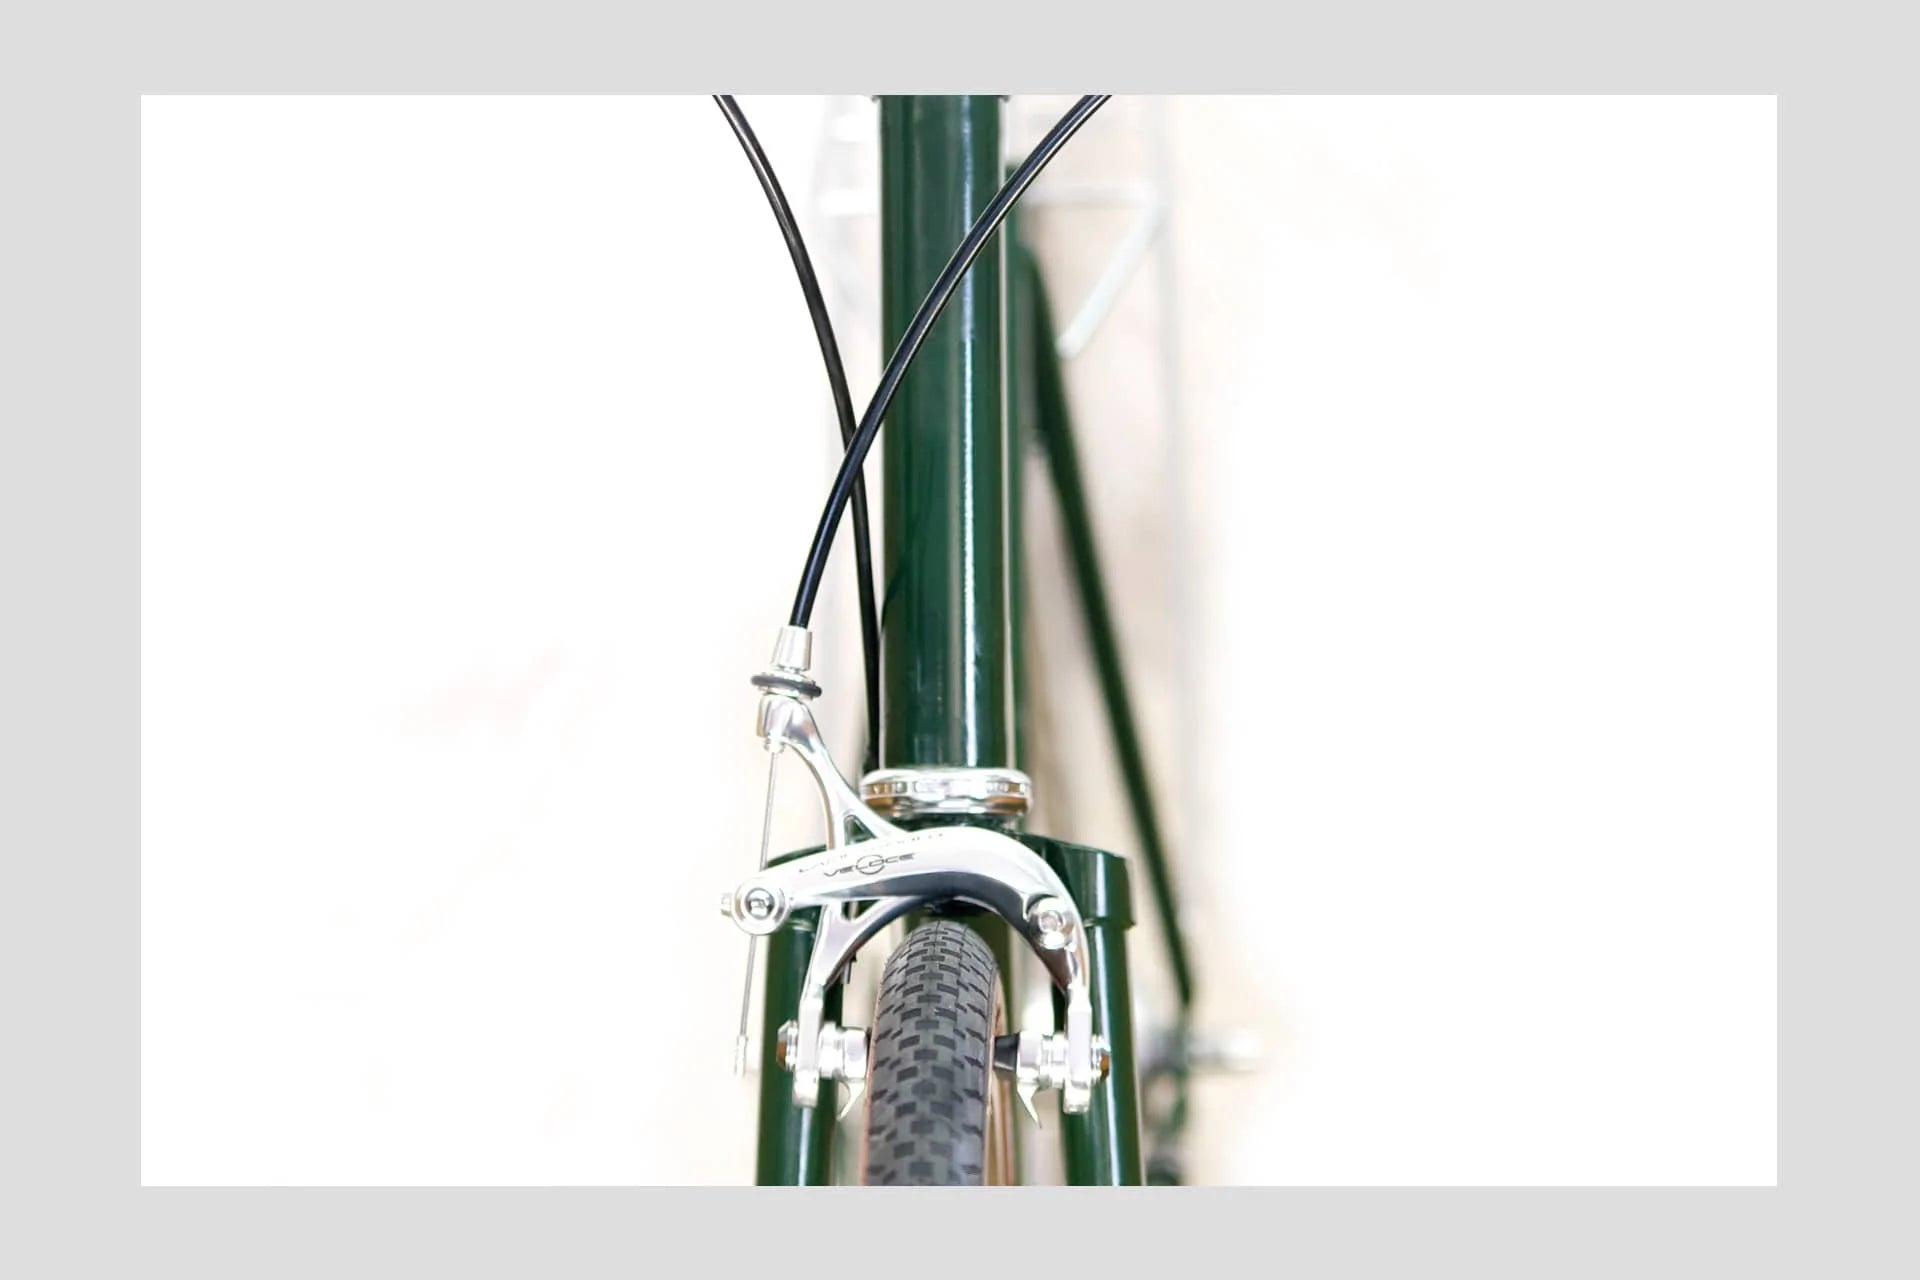 LADY - 5gear - Bottlegreen - GOrilla . urban cycling